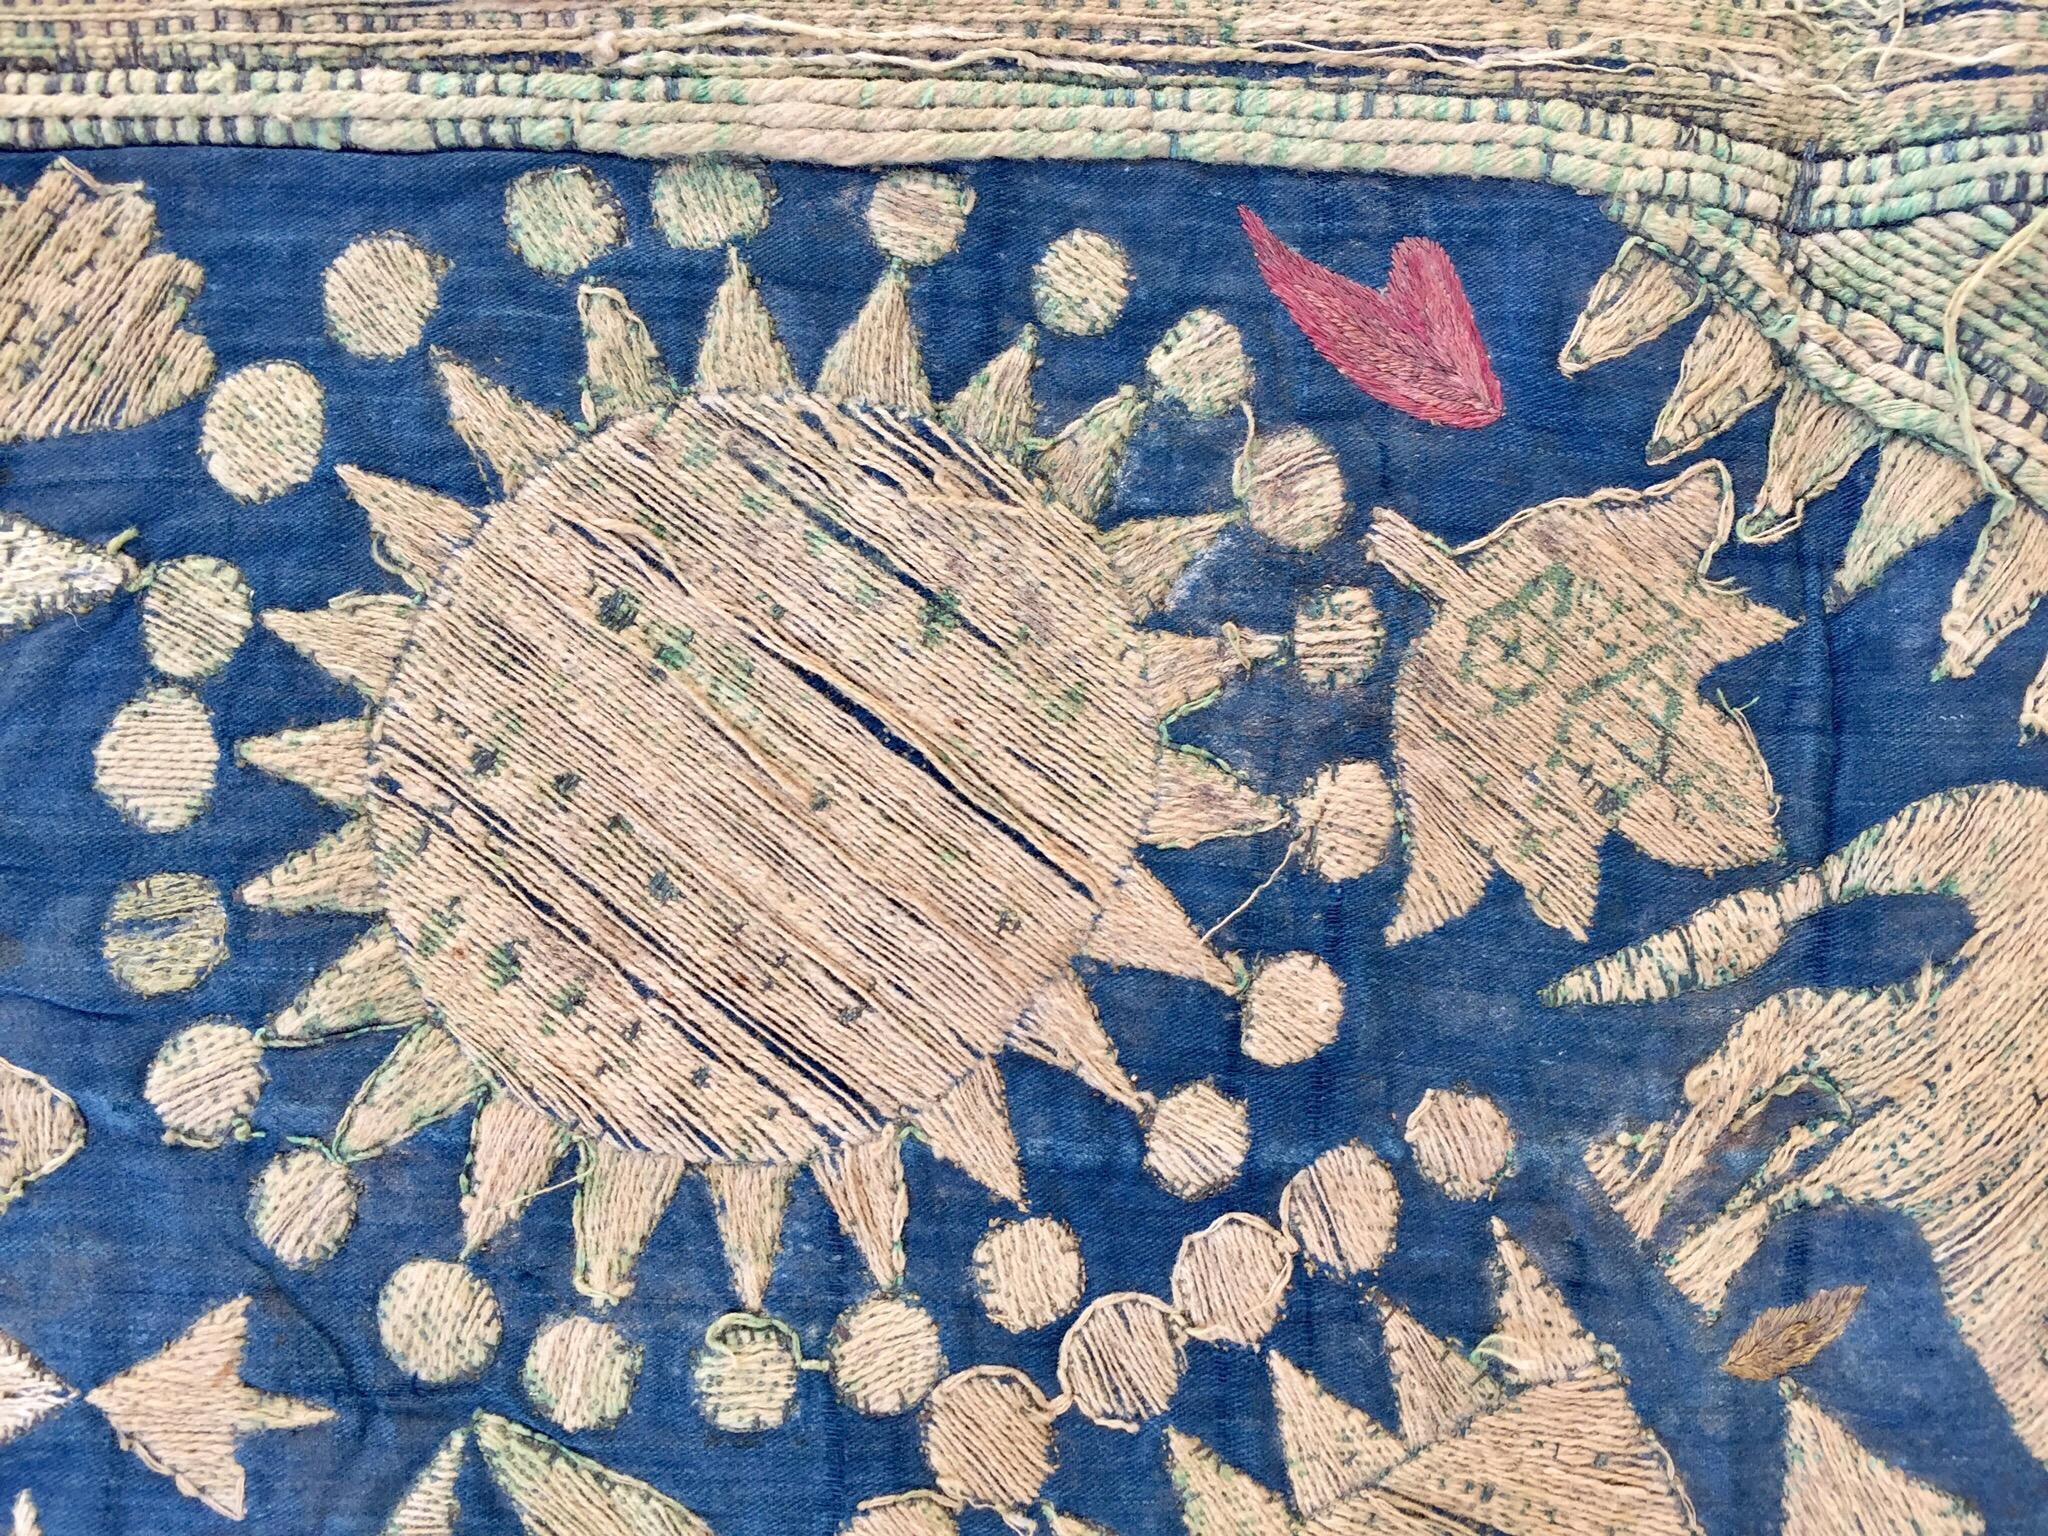 19th Century Moorish Islamic Ottoman Empire Textile Metallic Embroidered 4